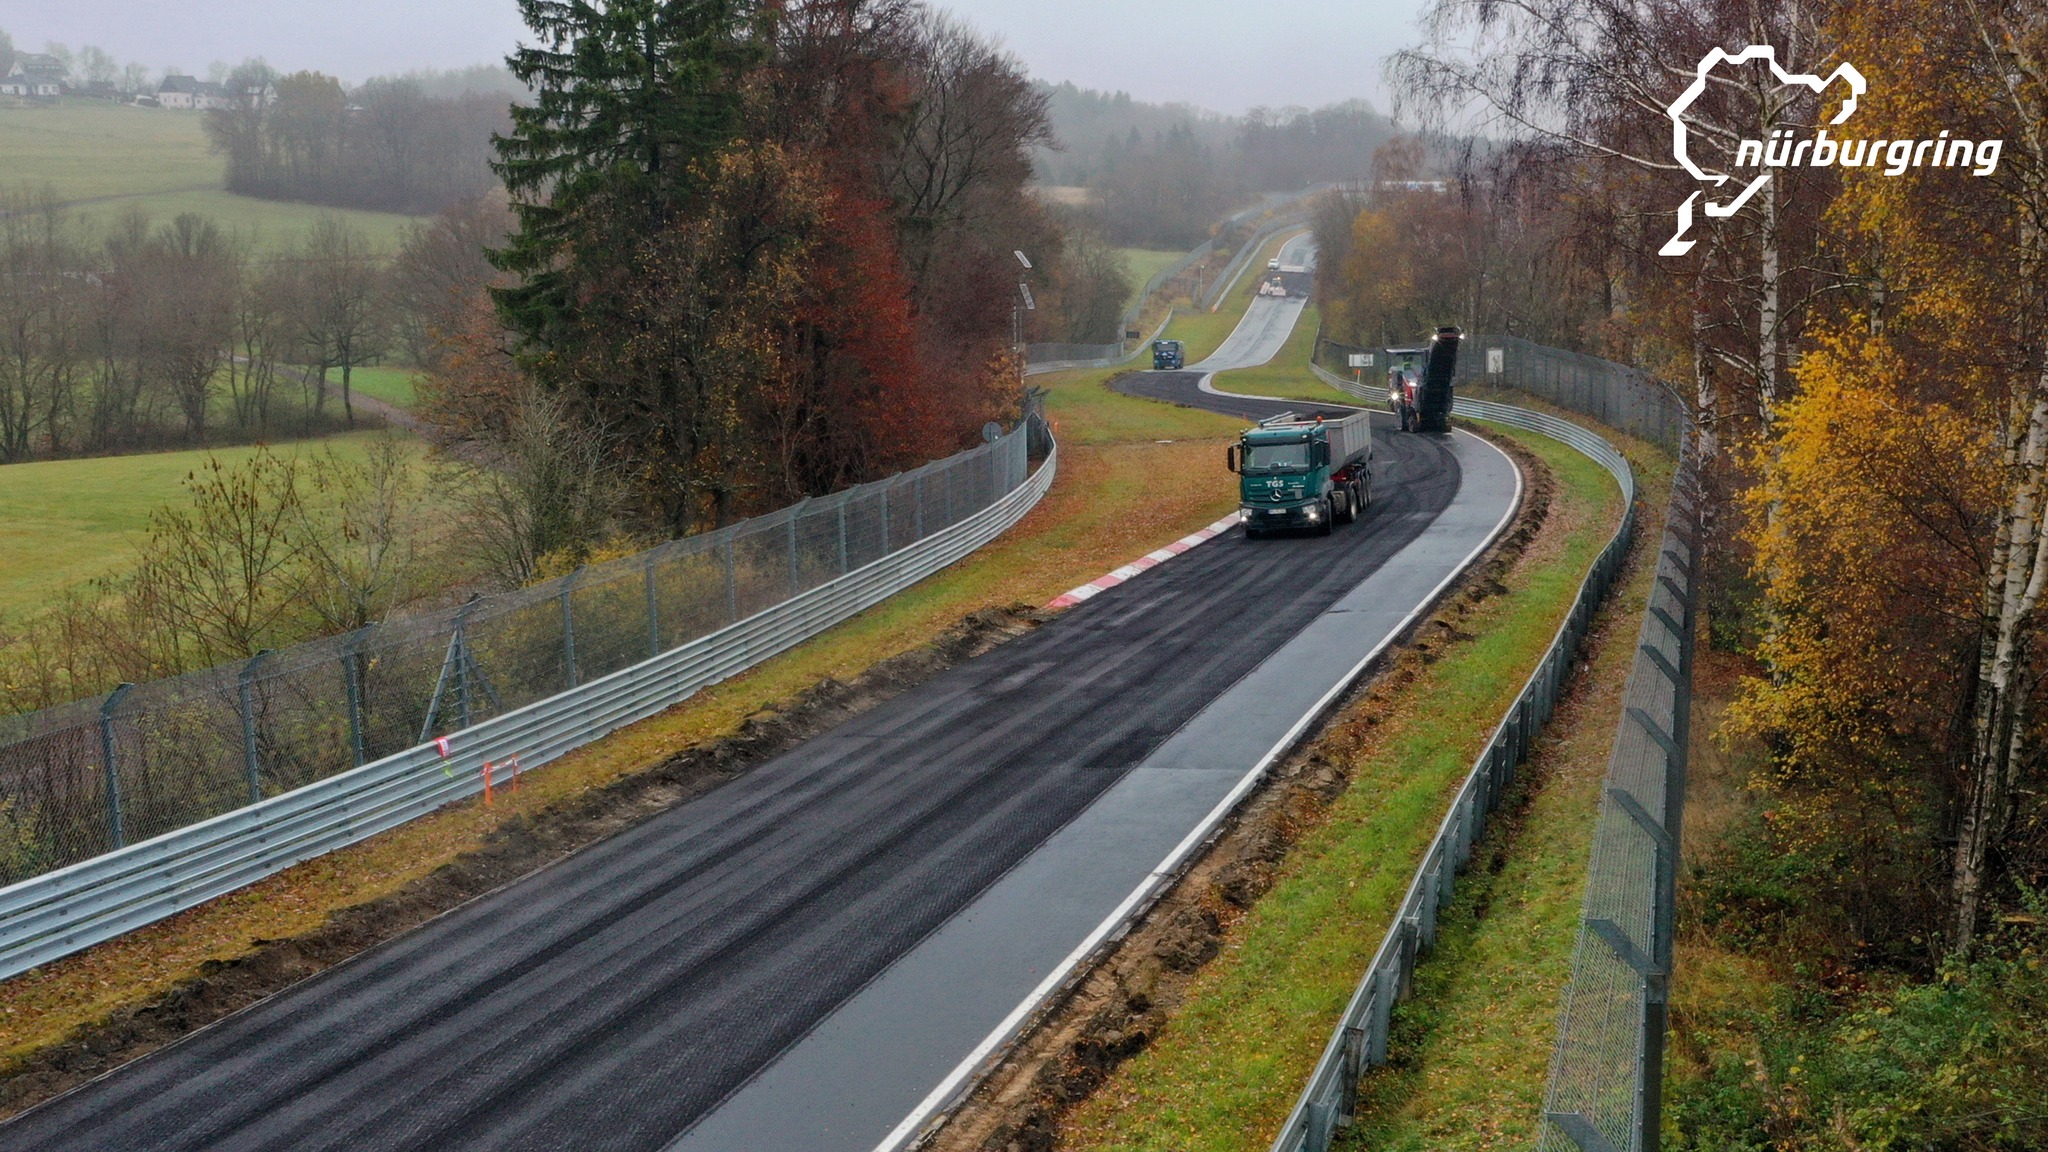 Nurburgring Nordschleife z pracami remontowymi - 2,5 km nowego asfaltu